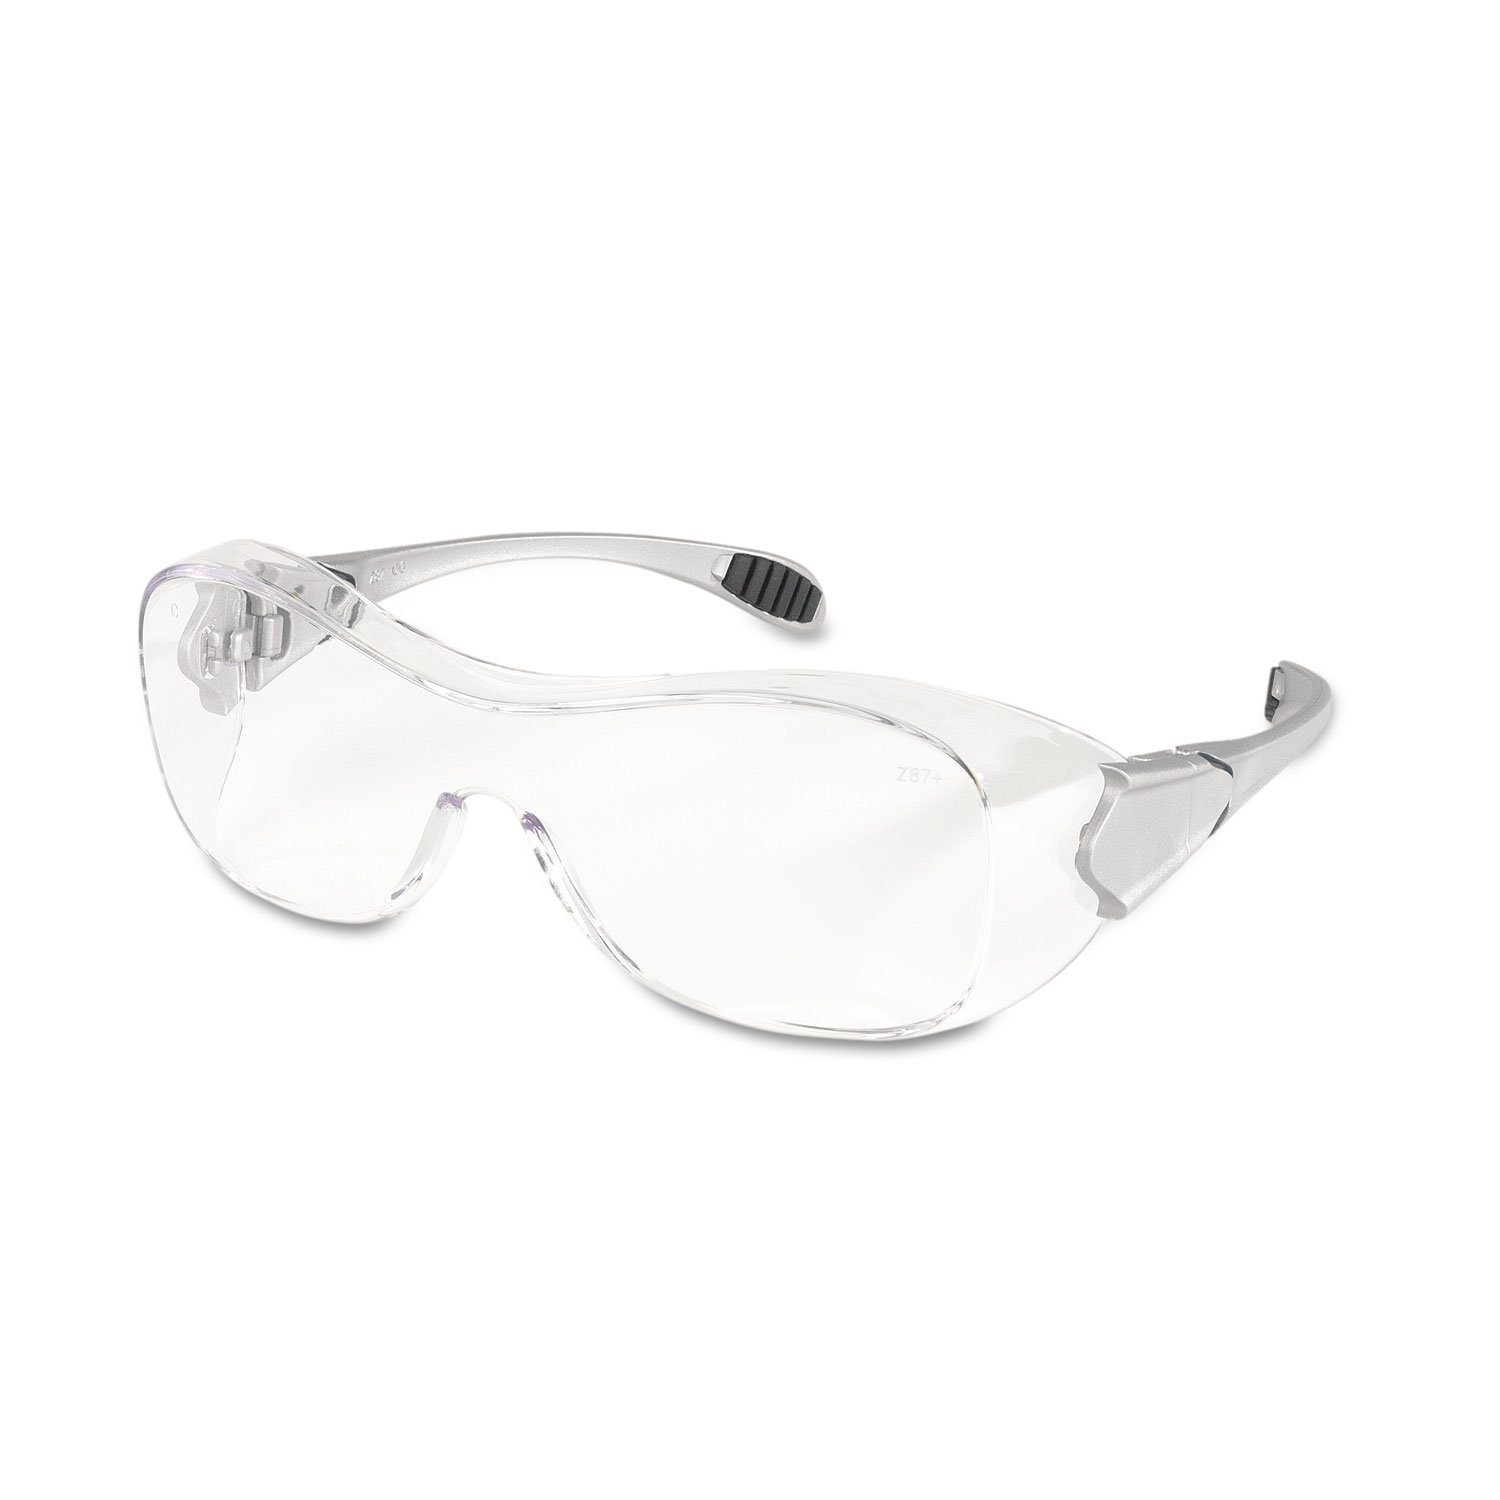  MCR Safety OG110AF Law Over the Glasses Safety Glasses, Clear Anti-Fog Lens (CRWOG110AF) 